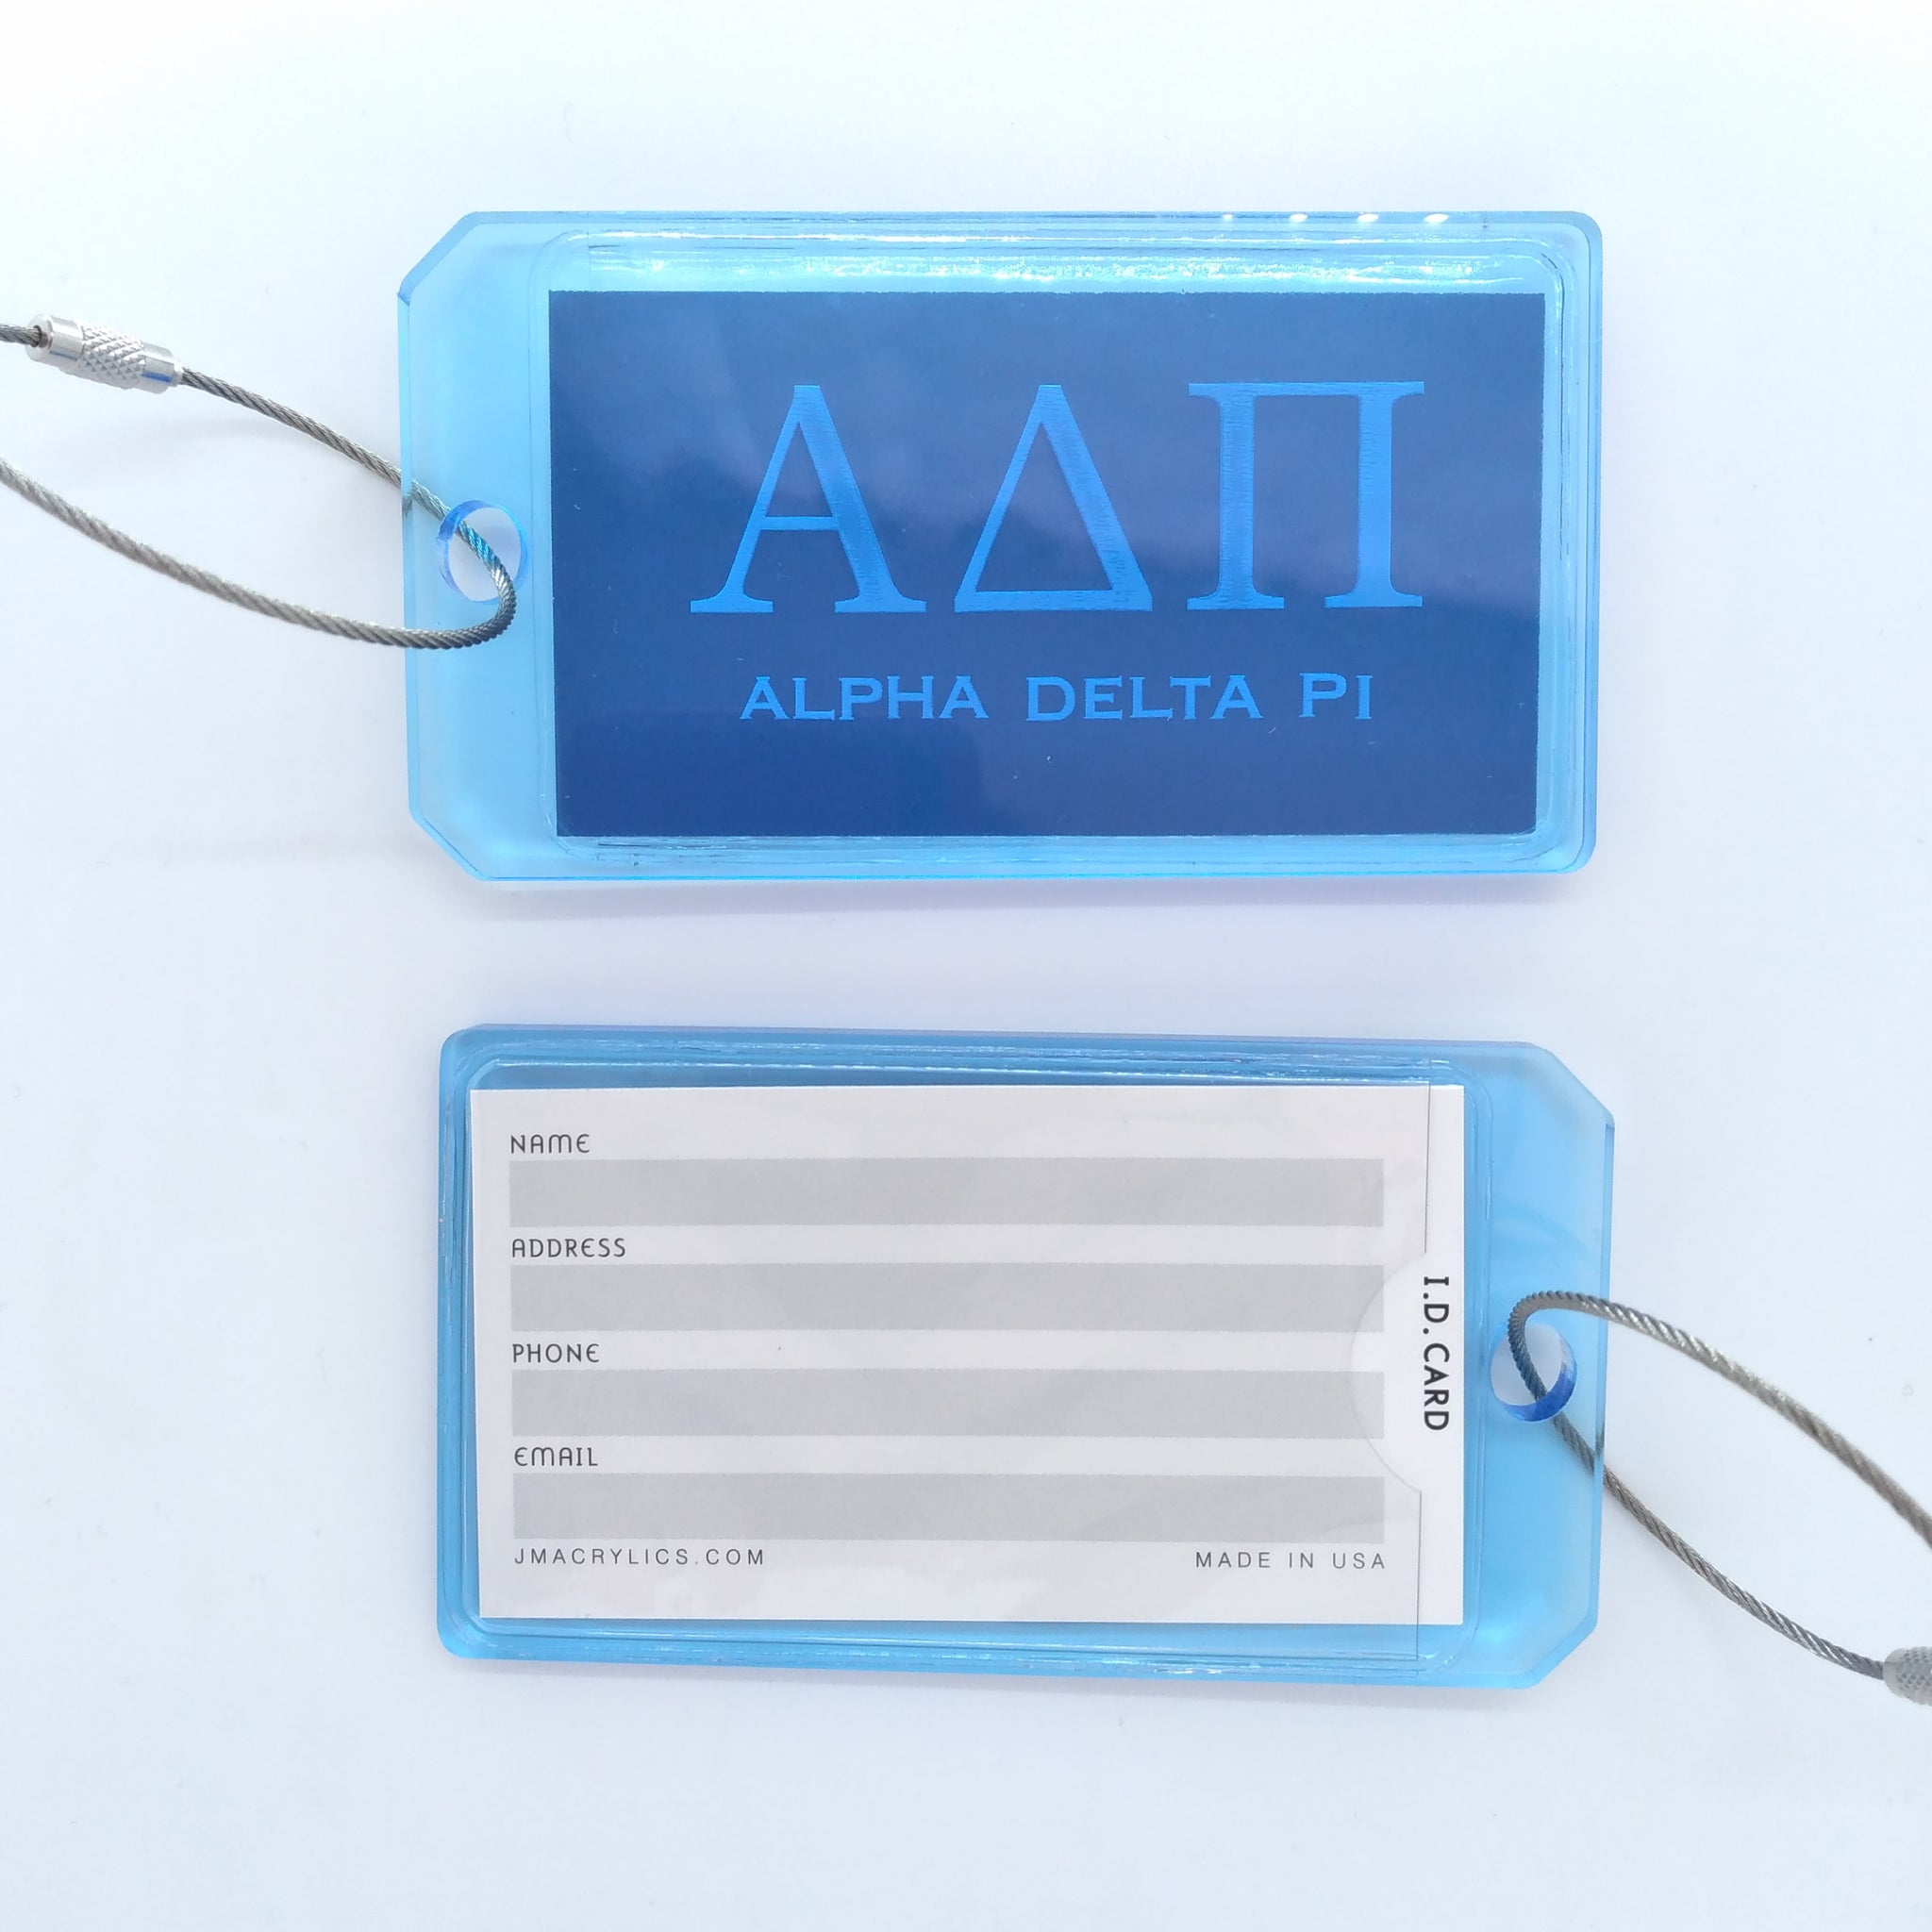 Acrylic Luggage Tag - Alpha Delta Pi